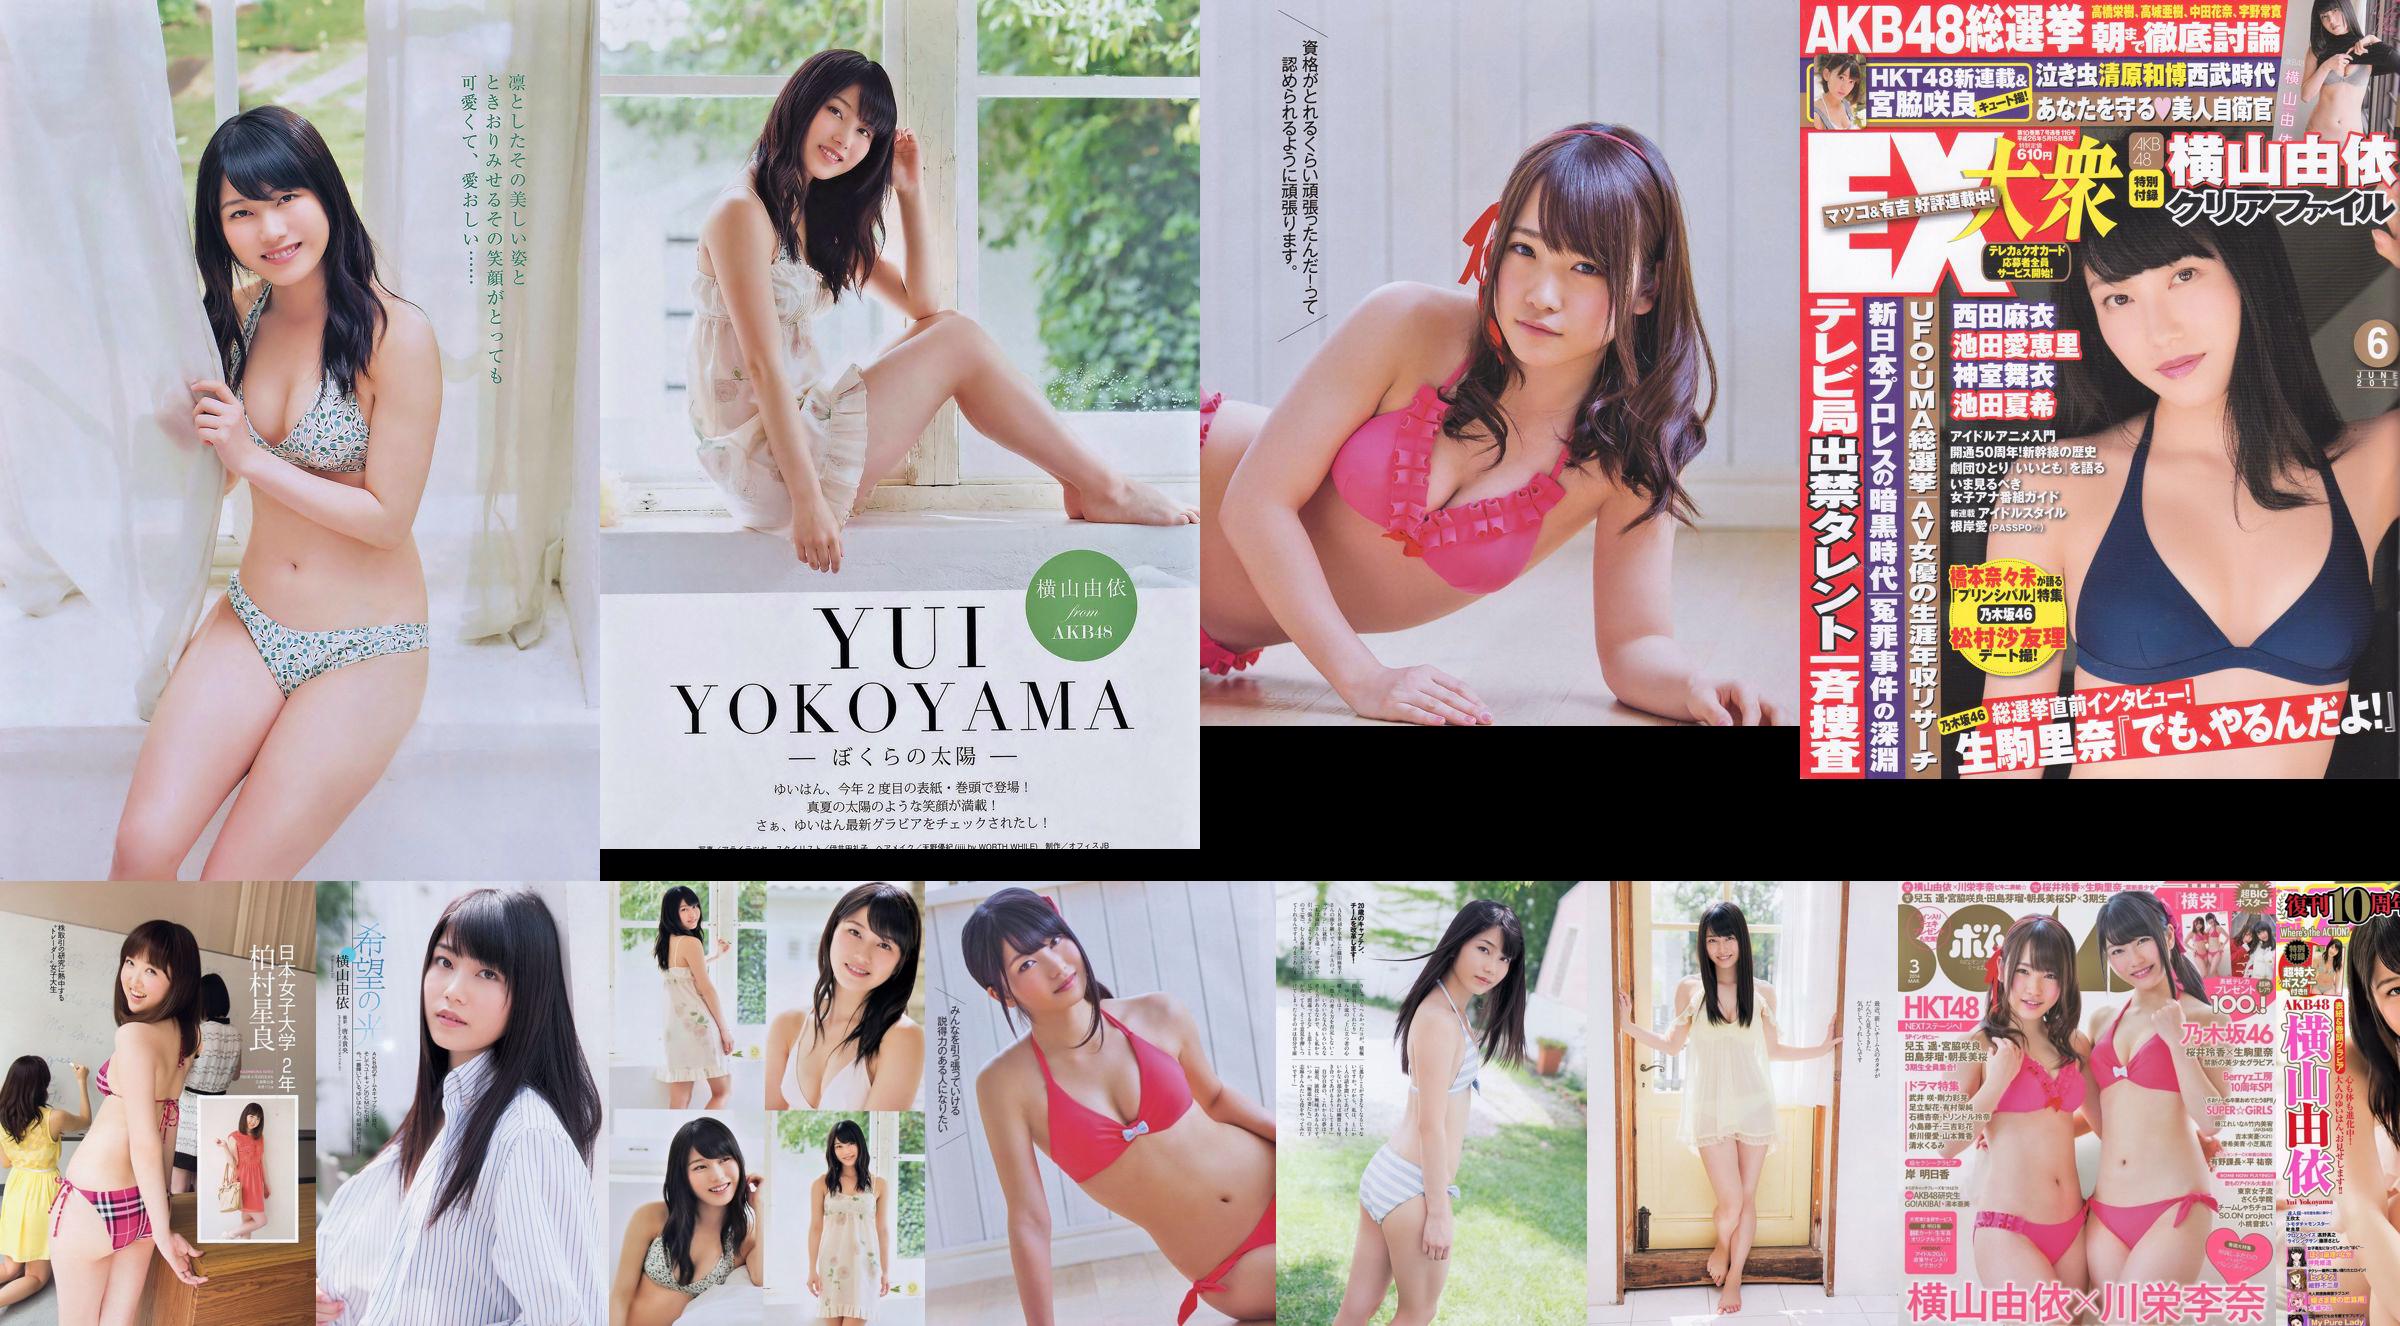 Yui Yokoyama Nozomi Sasaki Rina Koike Asuka Kuramochi Miwako Kakei Risa Yoshiki Ruri Shinato [Weekly Playboy] 2013 No.38 ภาพถ่าย No.65c760 หน้า 17